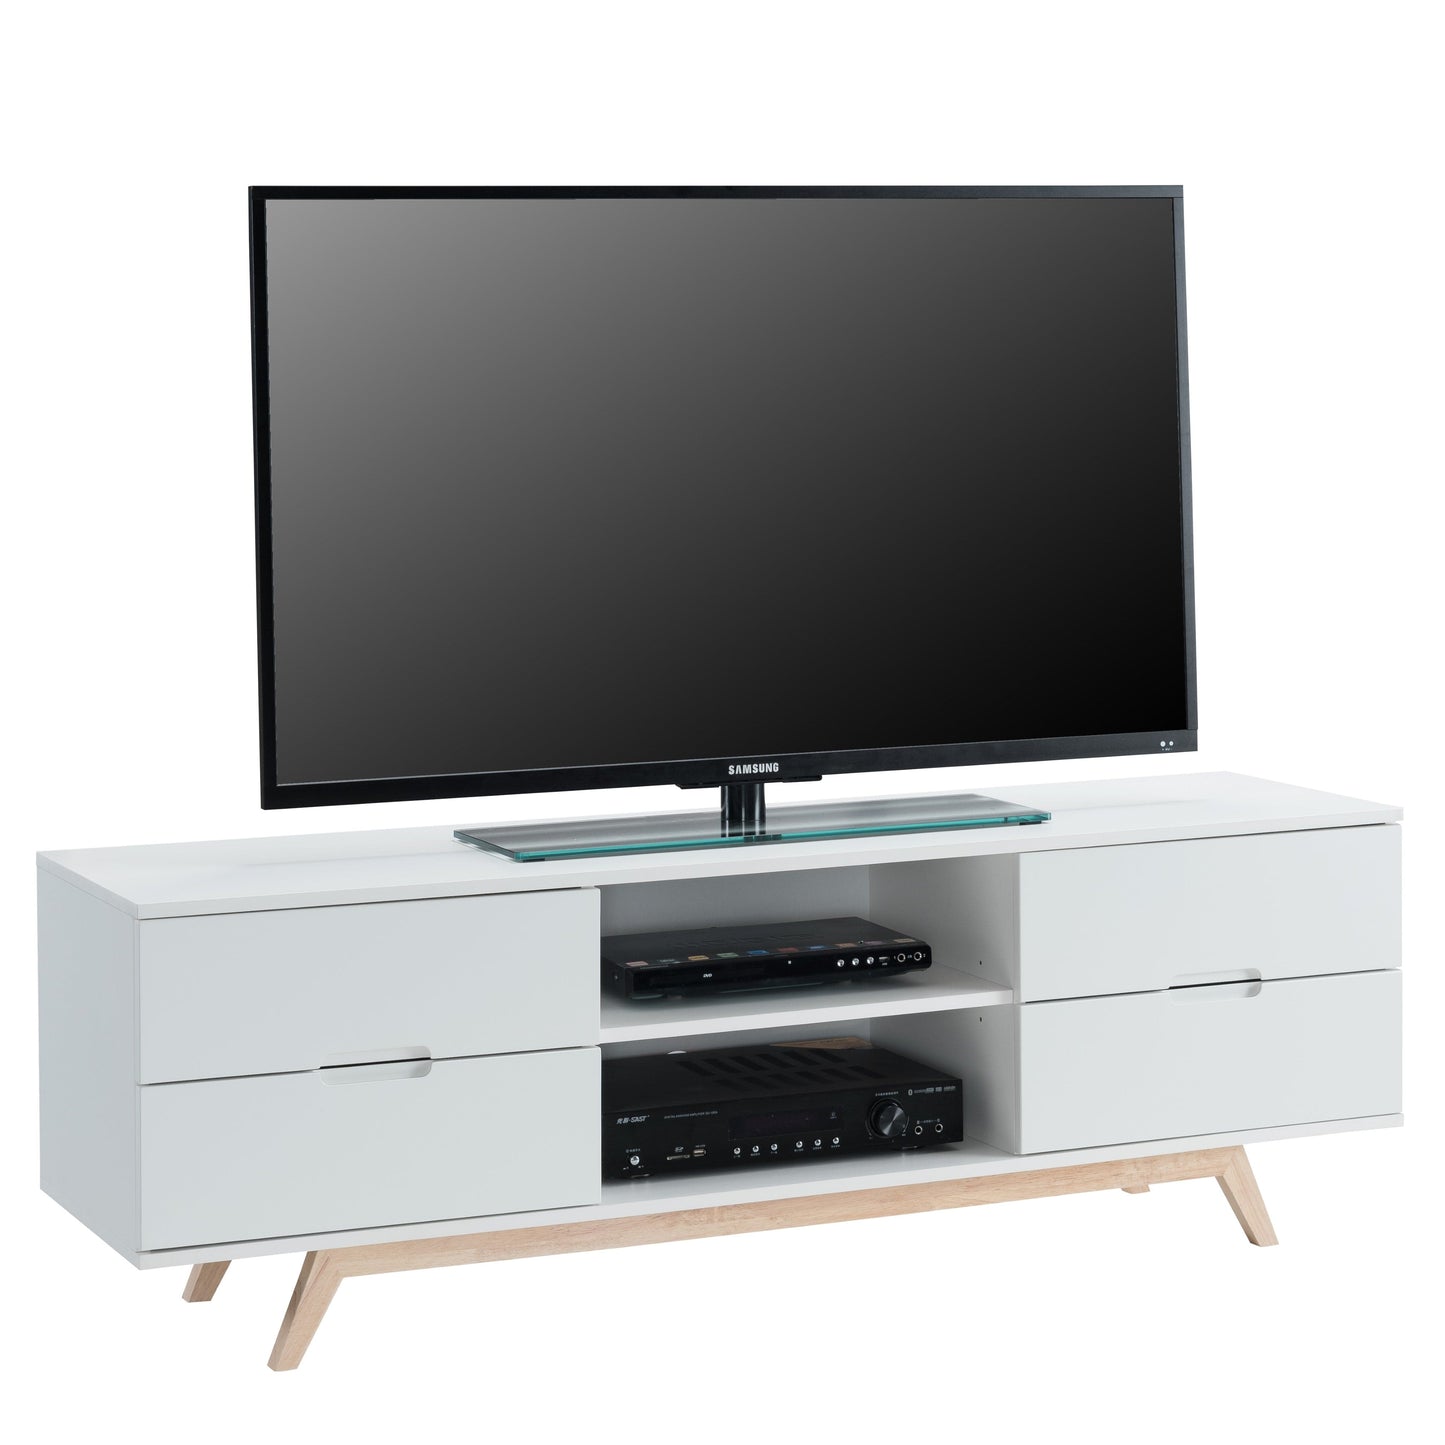 NOVA 1500 Entertainment Unit White by Tauris™ Furniture > Entertainment Centers & TV Stands HLS